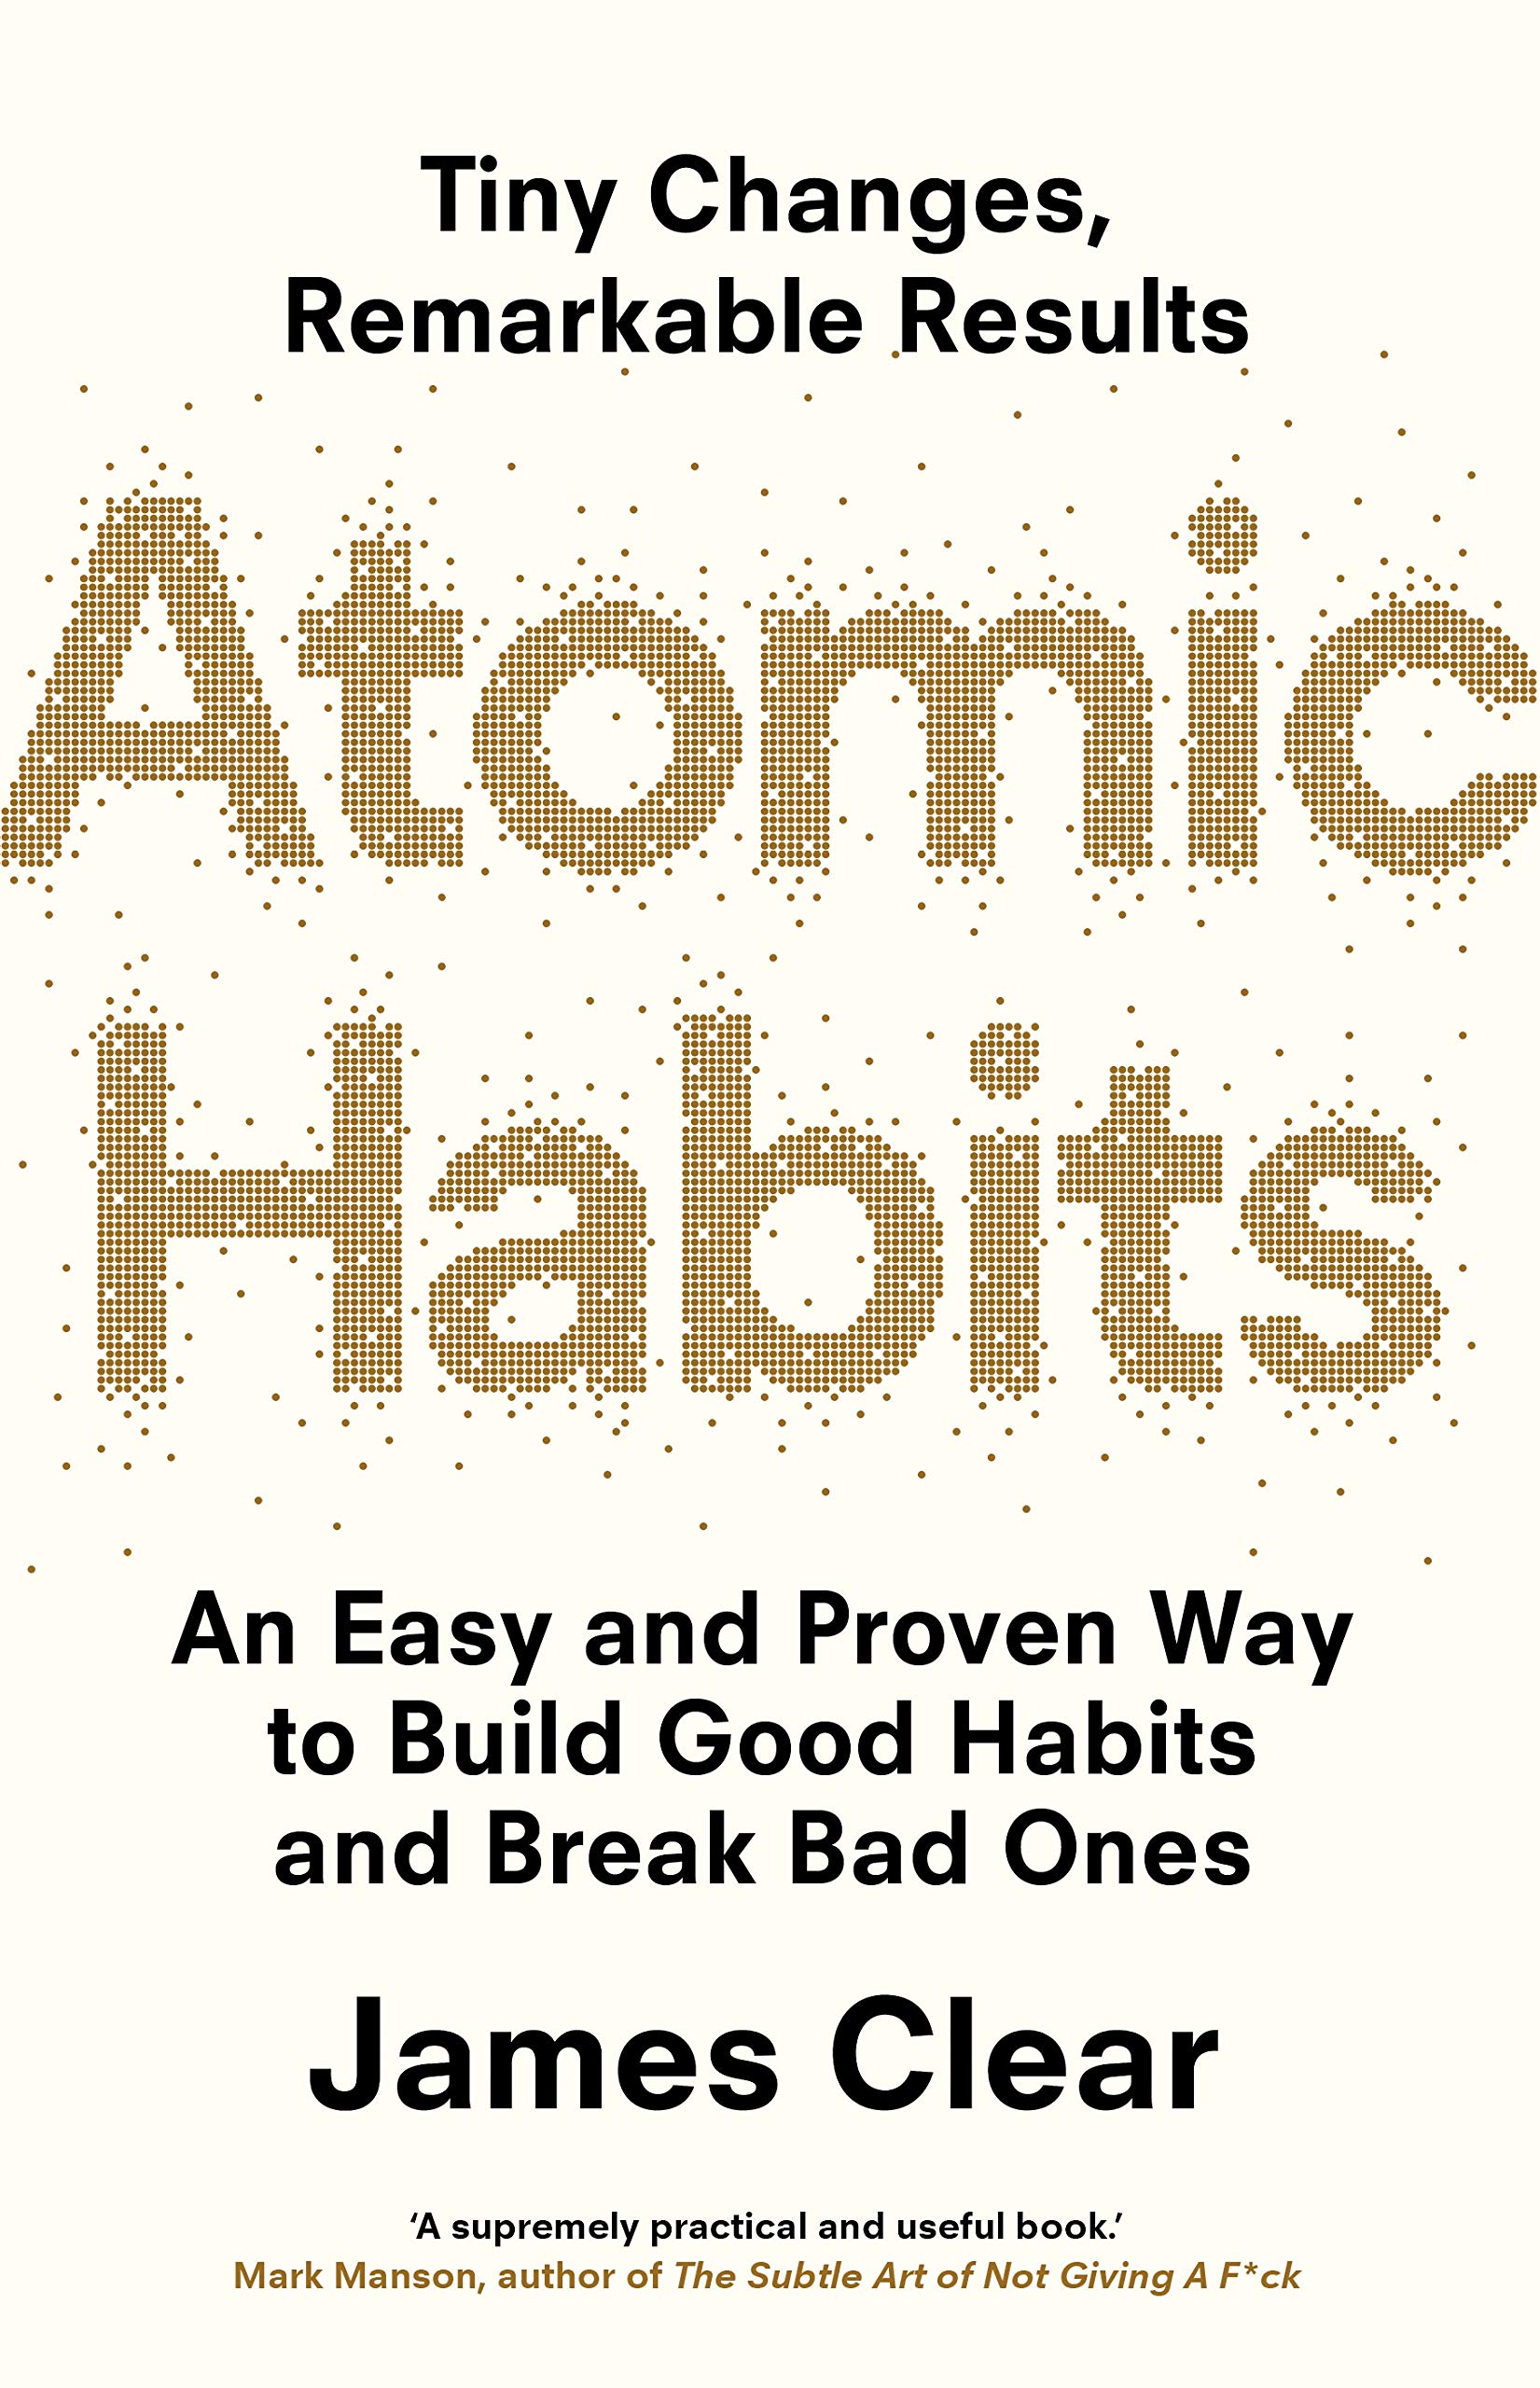 Atomic Habits (les micro habitudes) - James Clear (Résumé) - Mister Fanjo